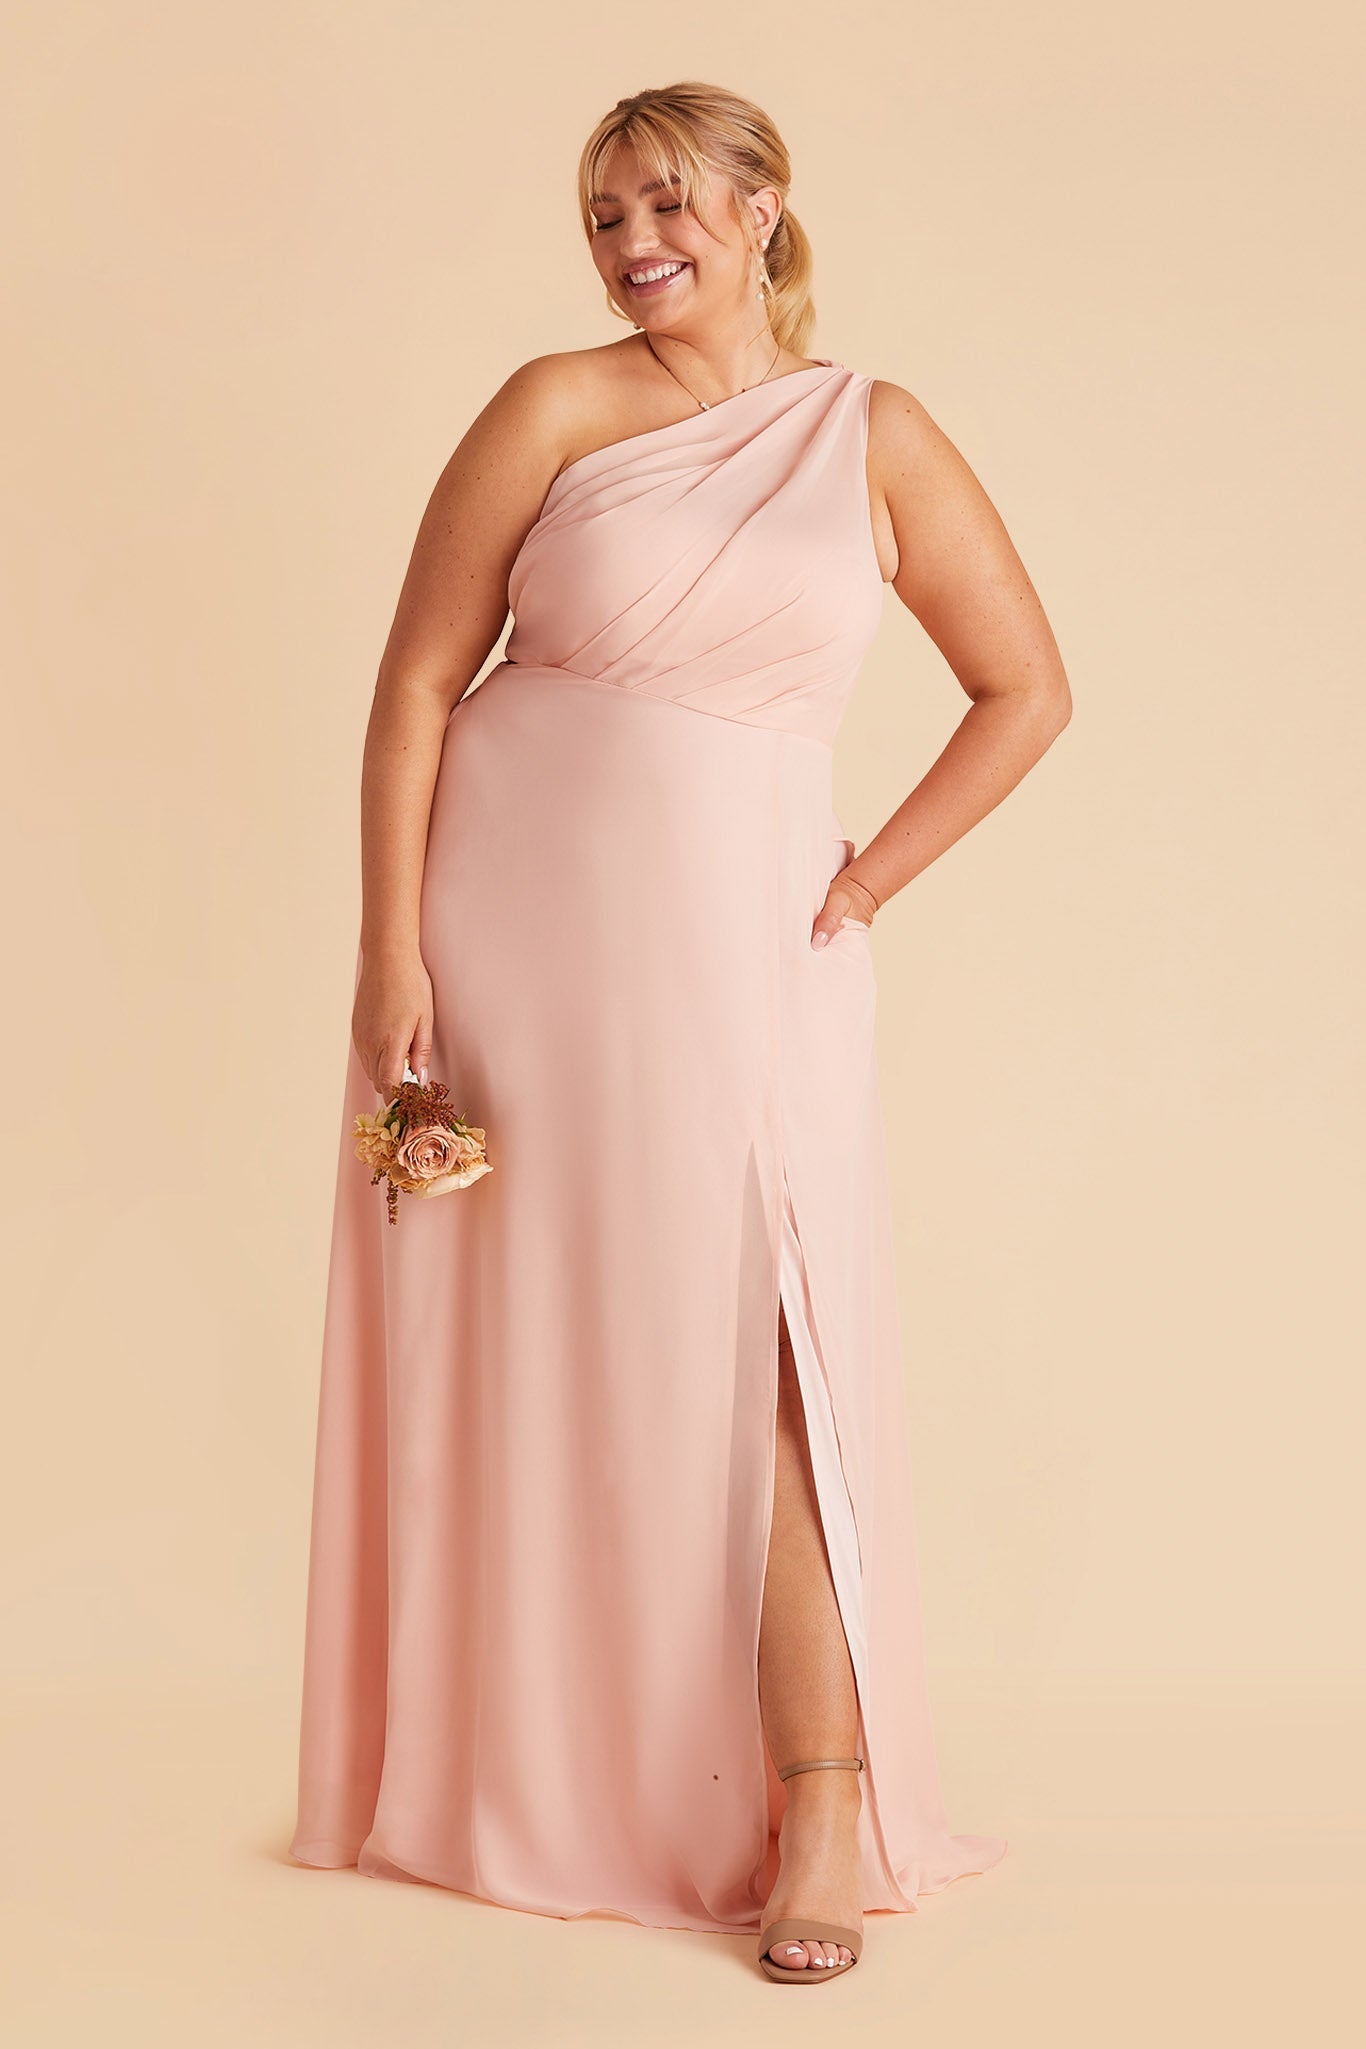 Kira Dress - Blush Pink